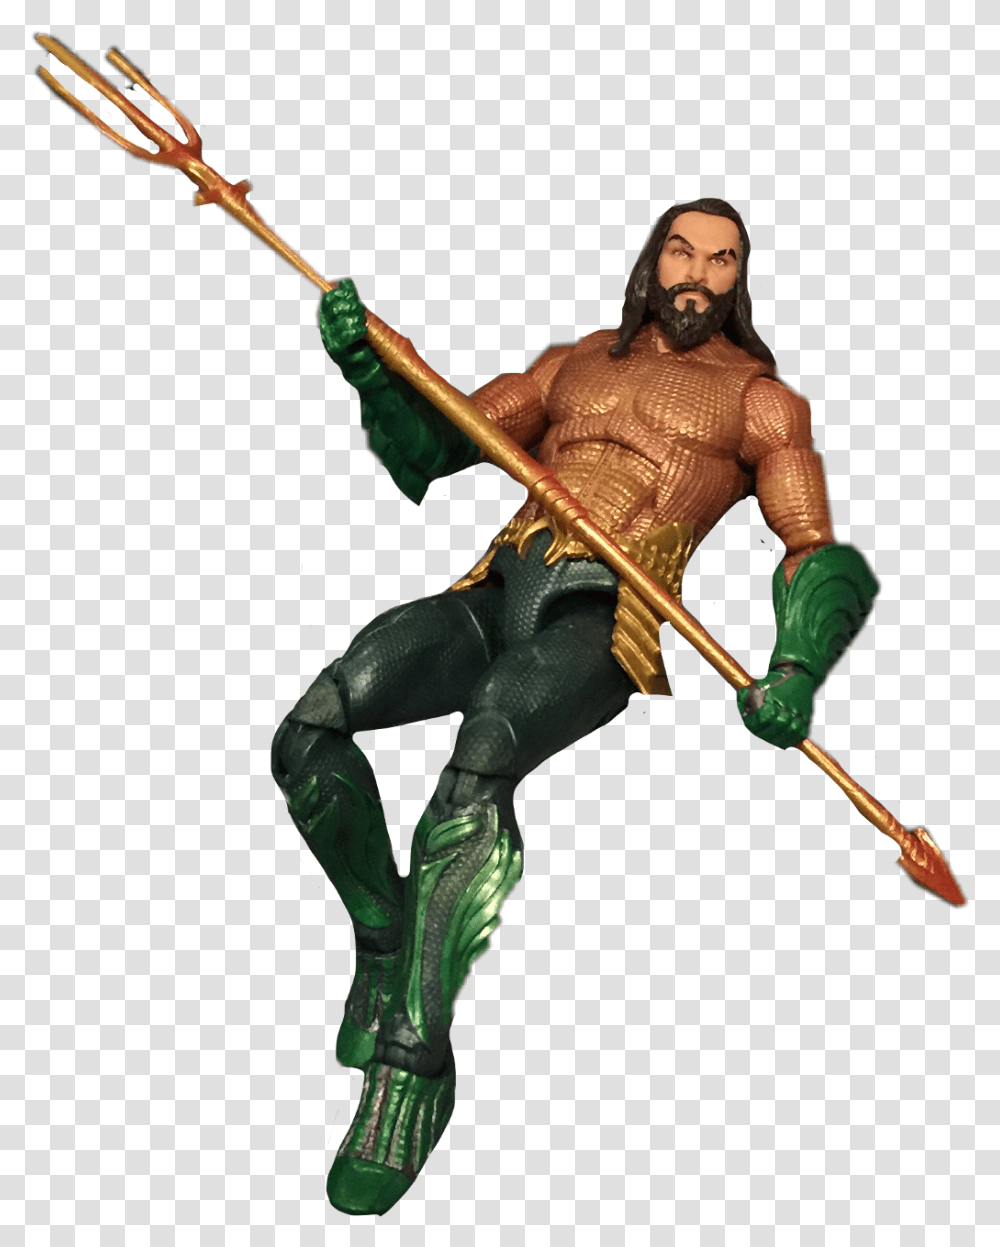 Aquaman Jasonmomoa Freetoedit Action Figure, Person, Human, Emblem Transparent Png